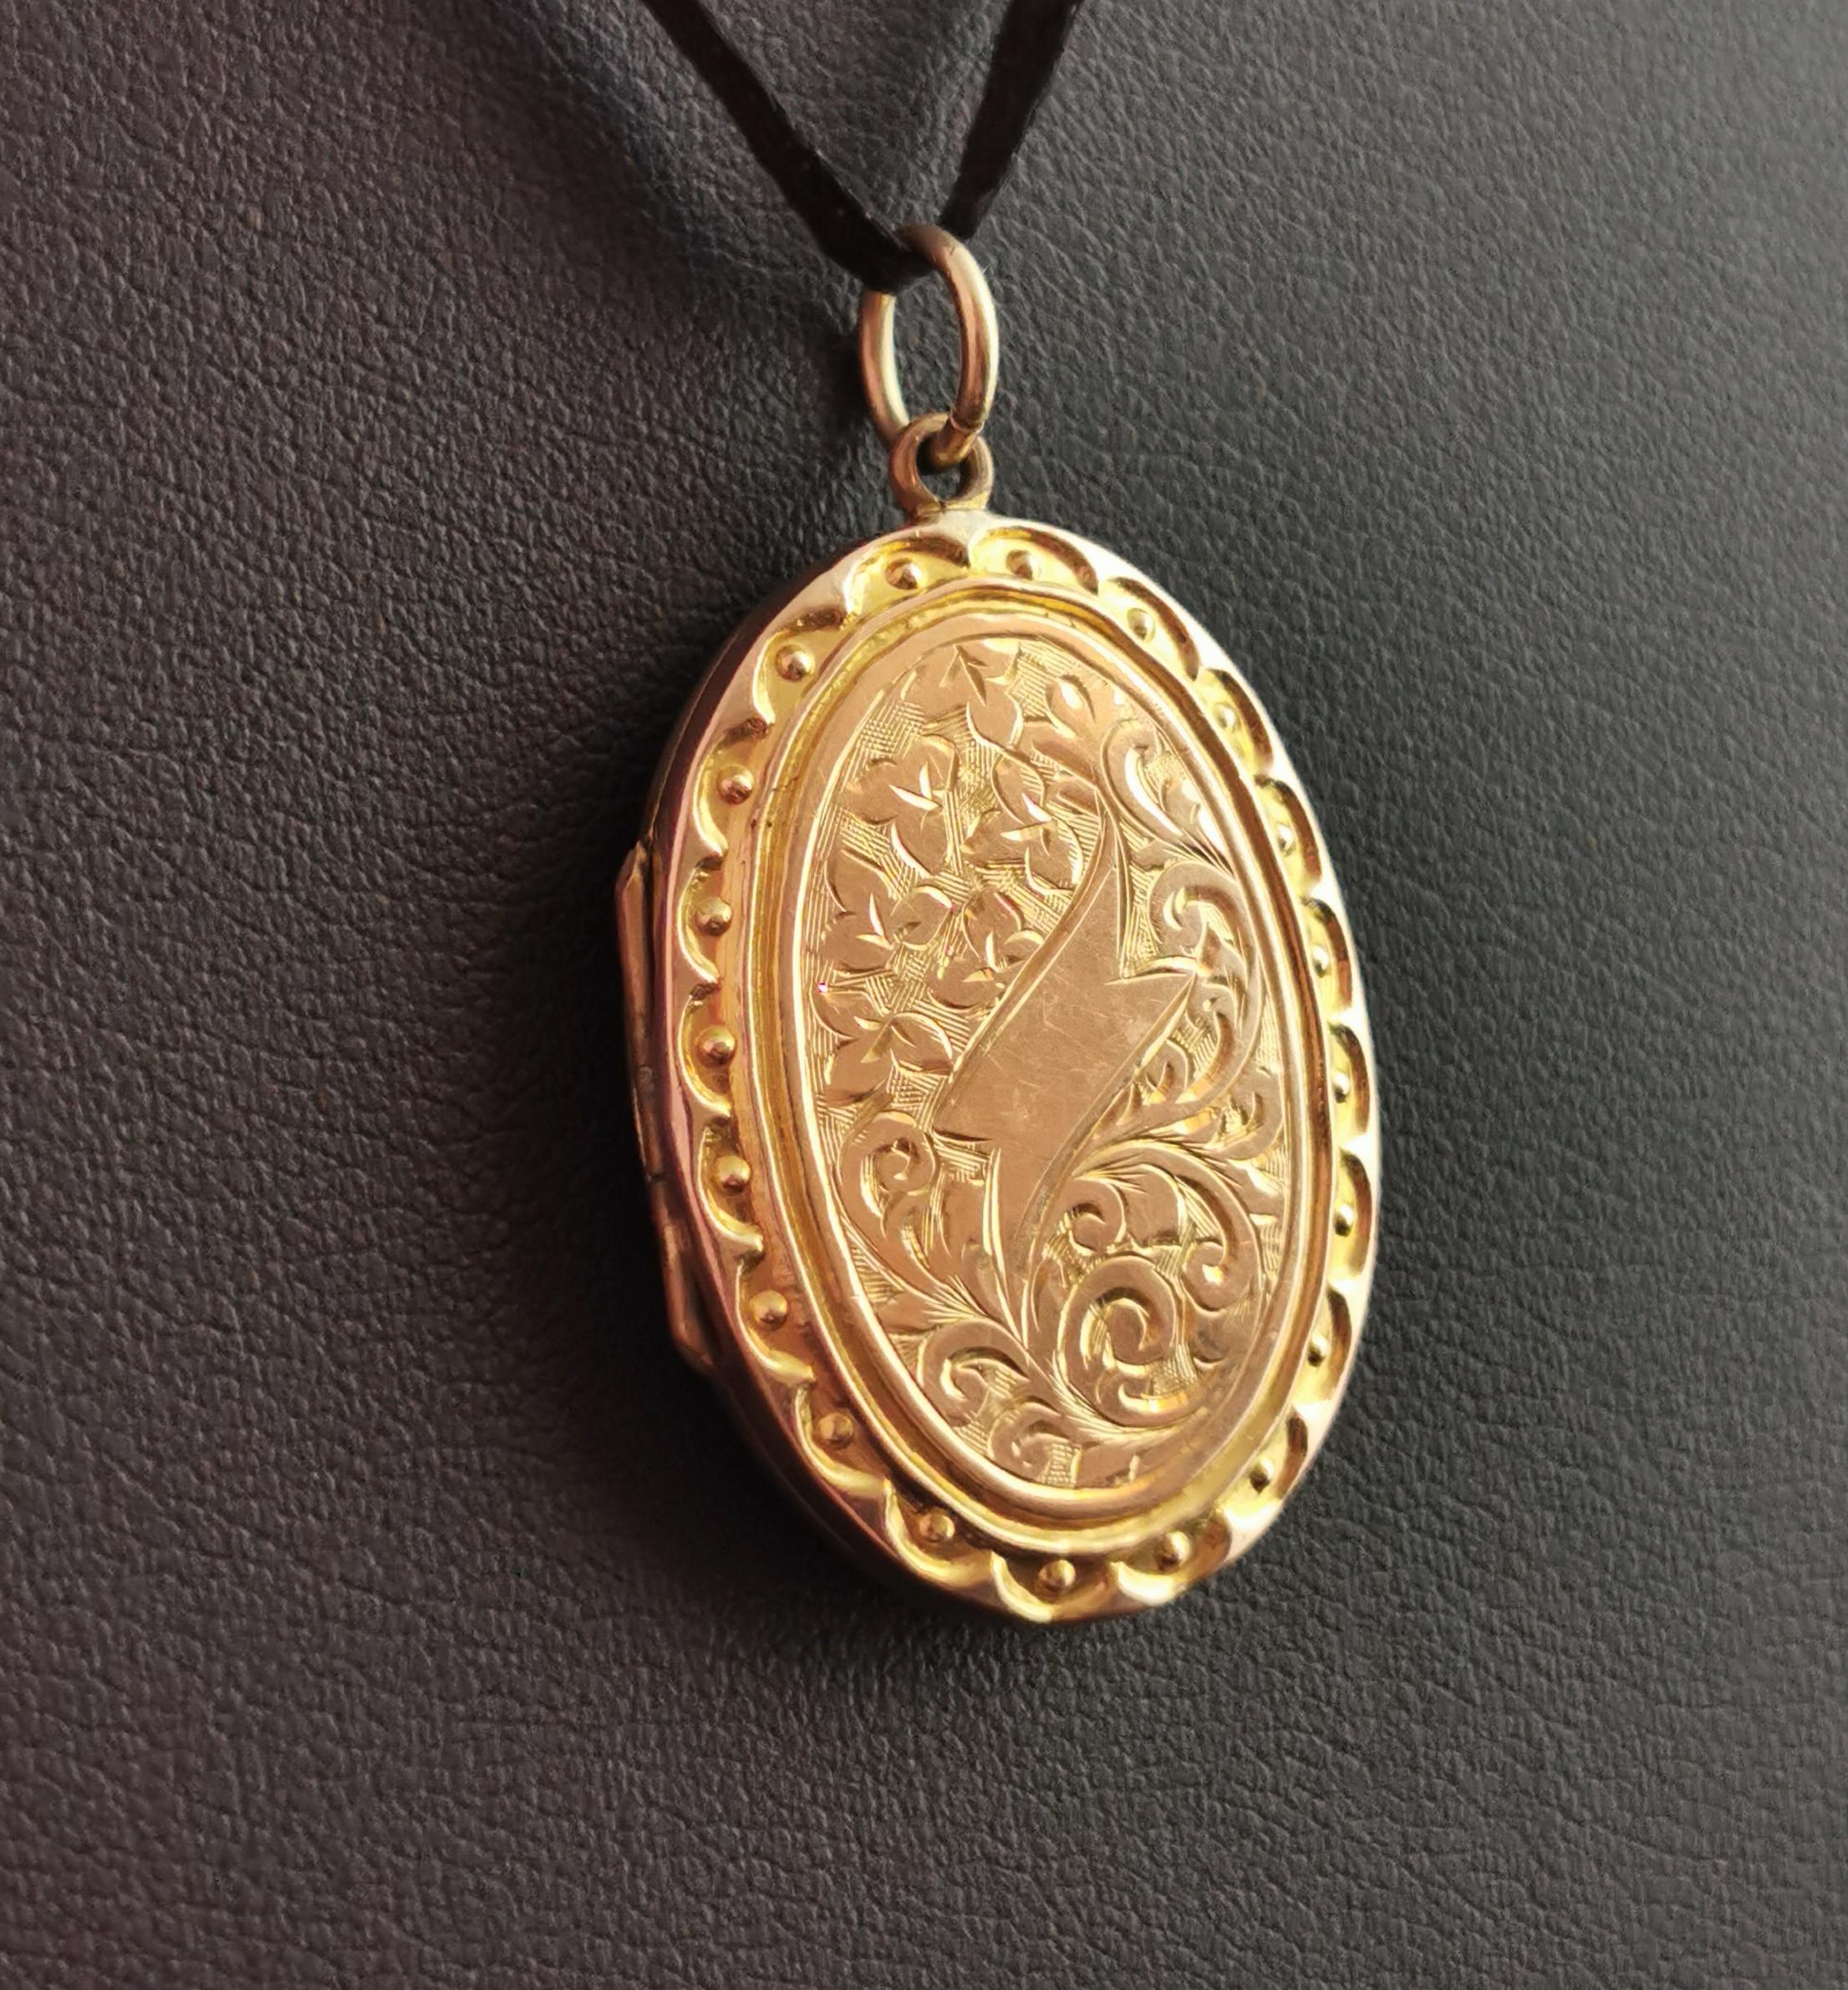 Antique Edwardian 9k gold front and back locket pendant, engraved  4